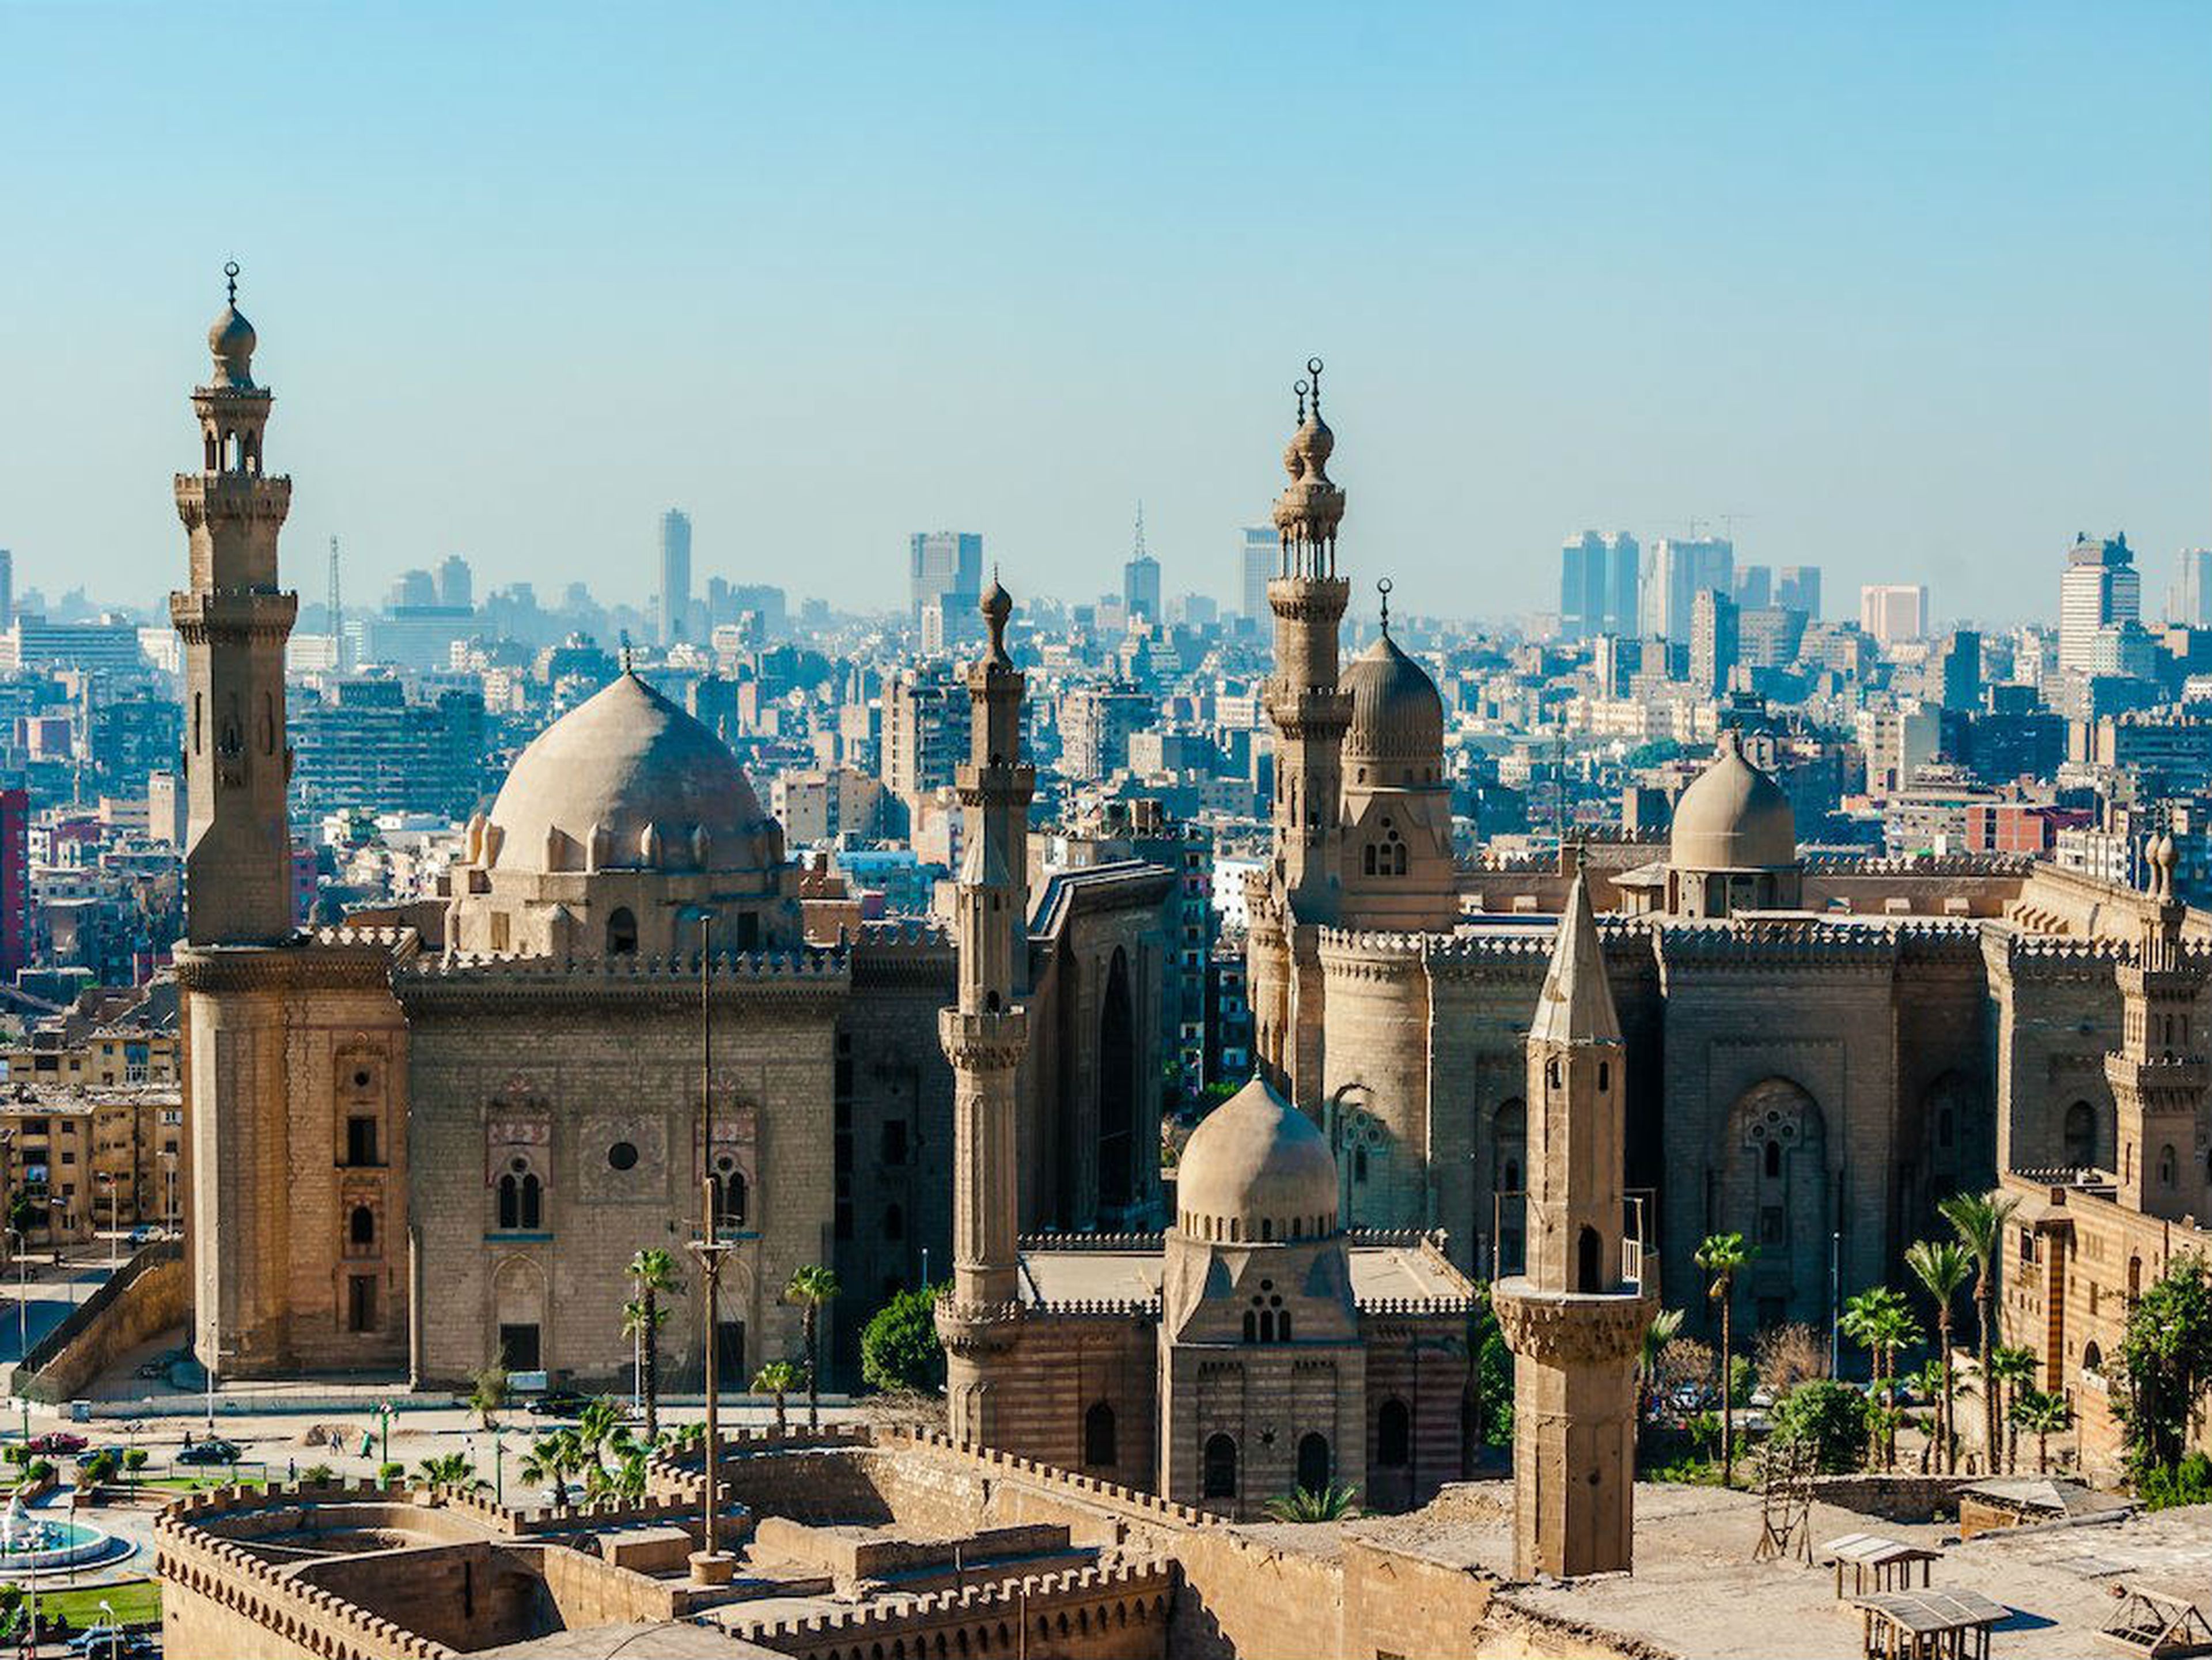 Mezquita-madraza Sultan Hassan en El Cairo (Egipto).